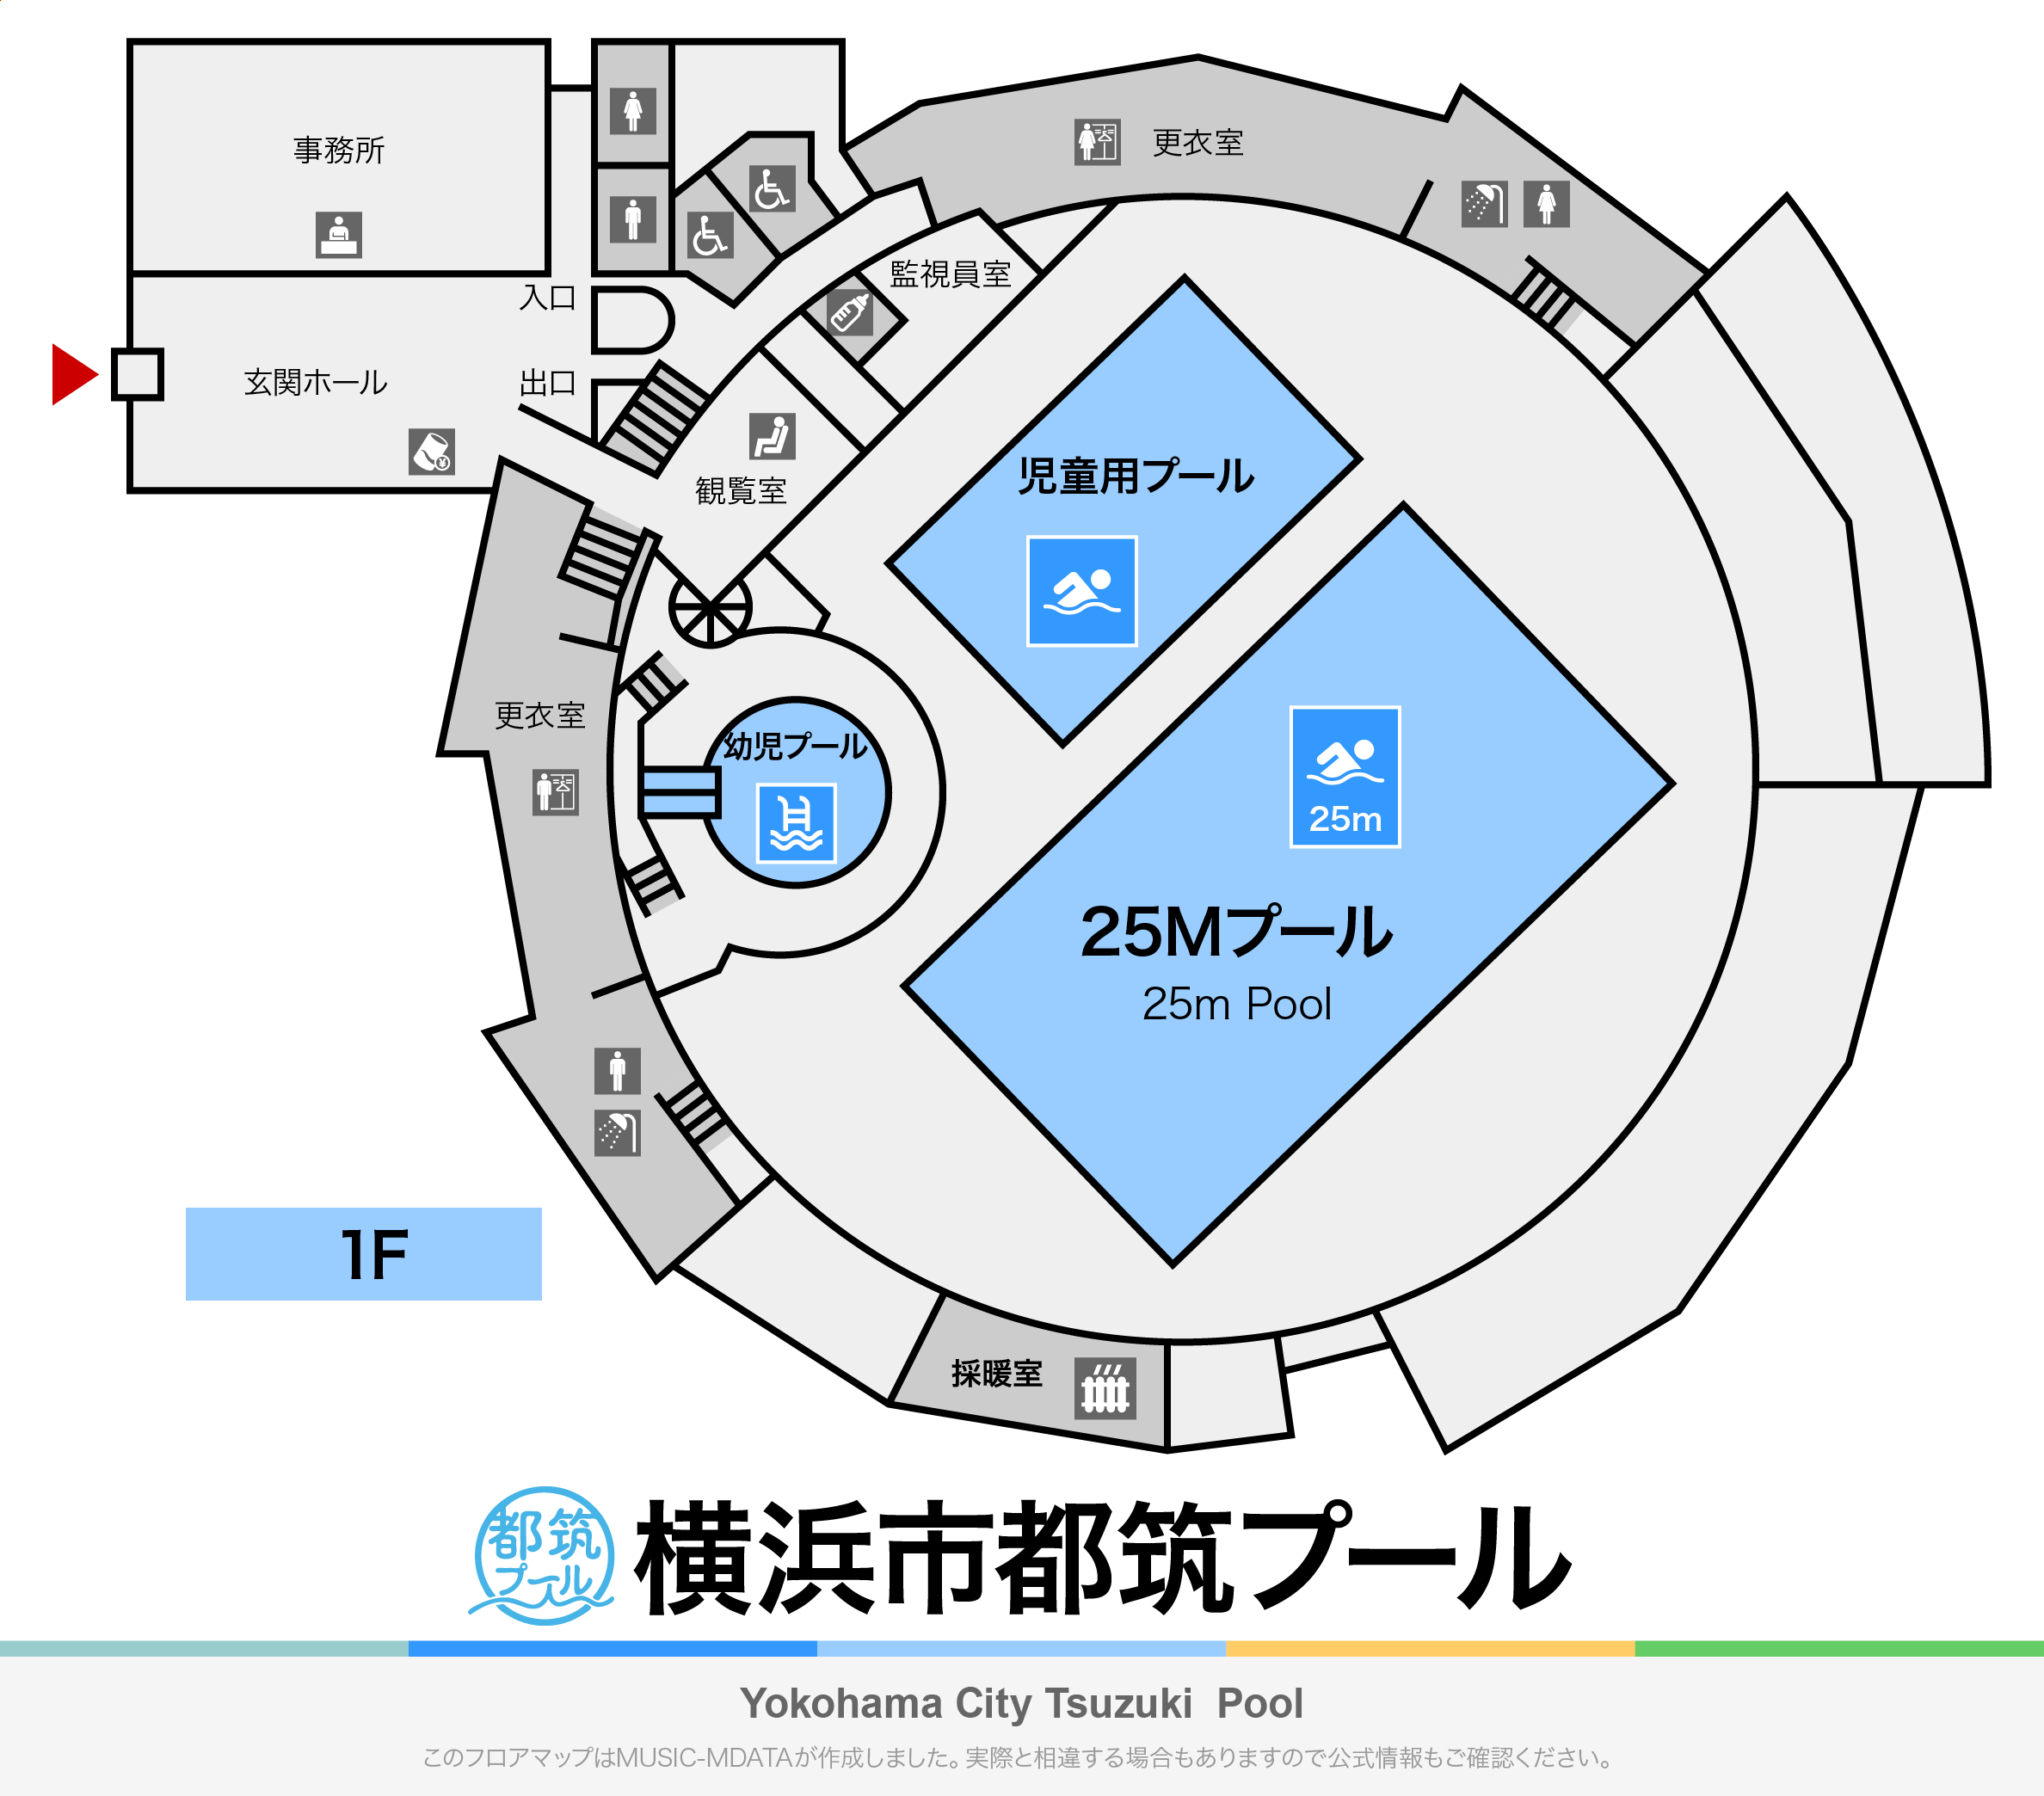 横浜市都筑プールのフロアマップ・体育館